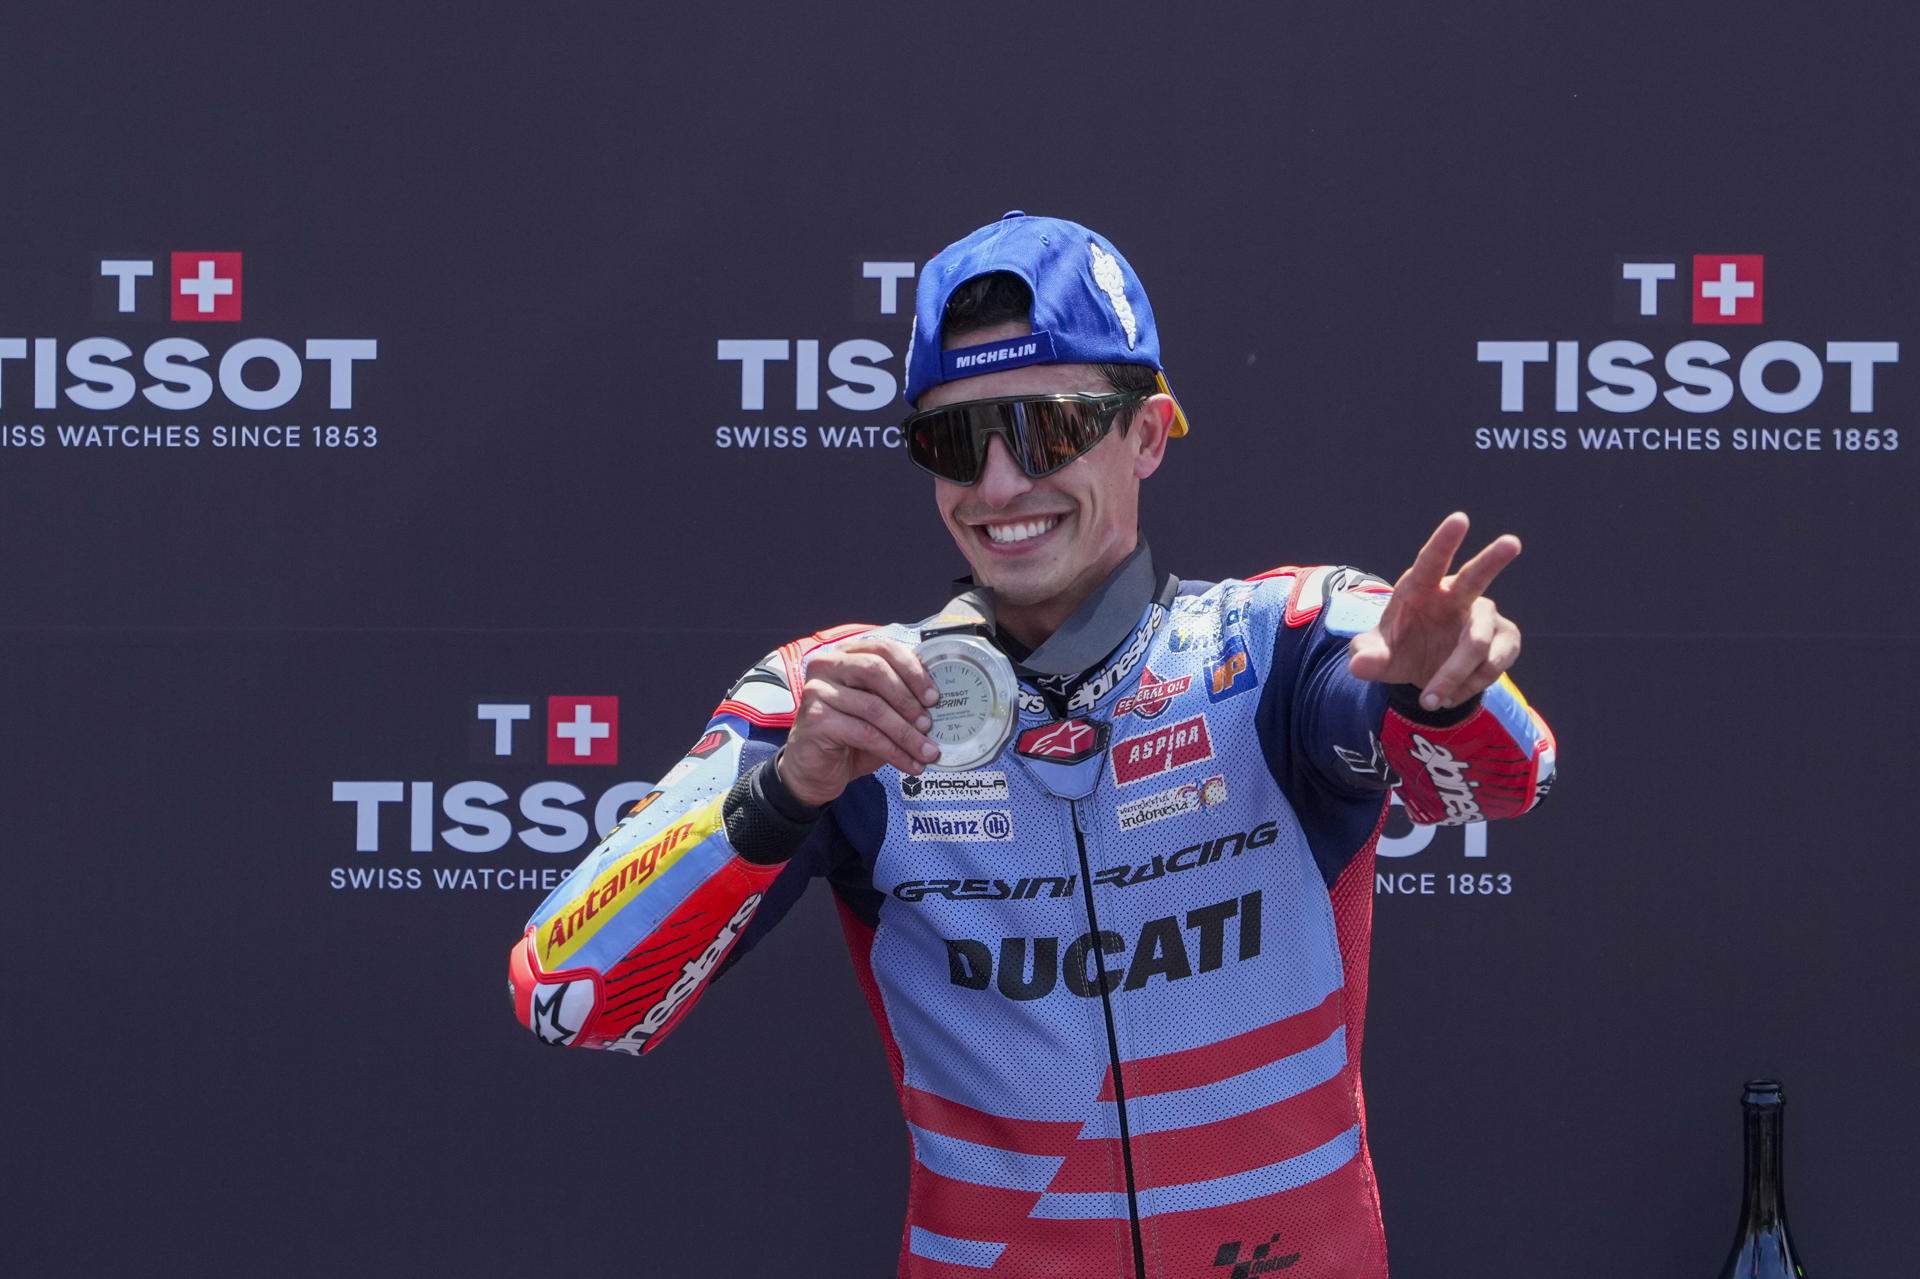 Marc Márquez, piloto número 1 y cheque en blanco para no ir a la Ducati oficial